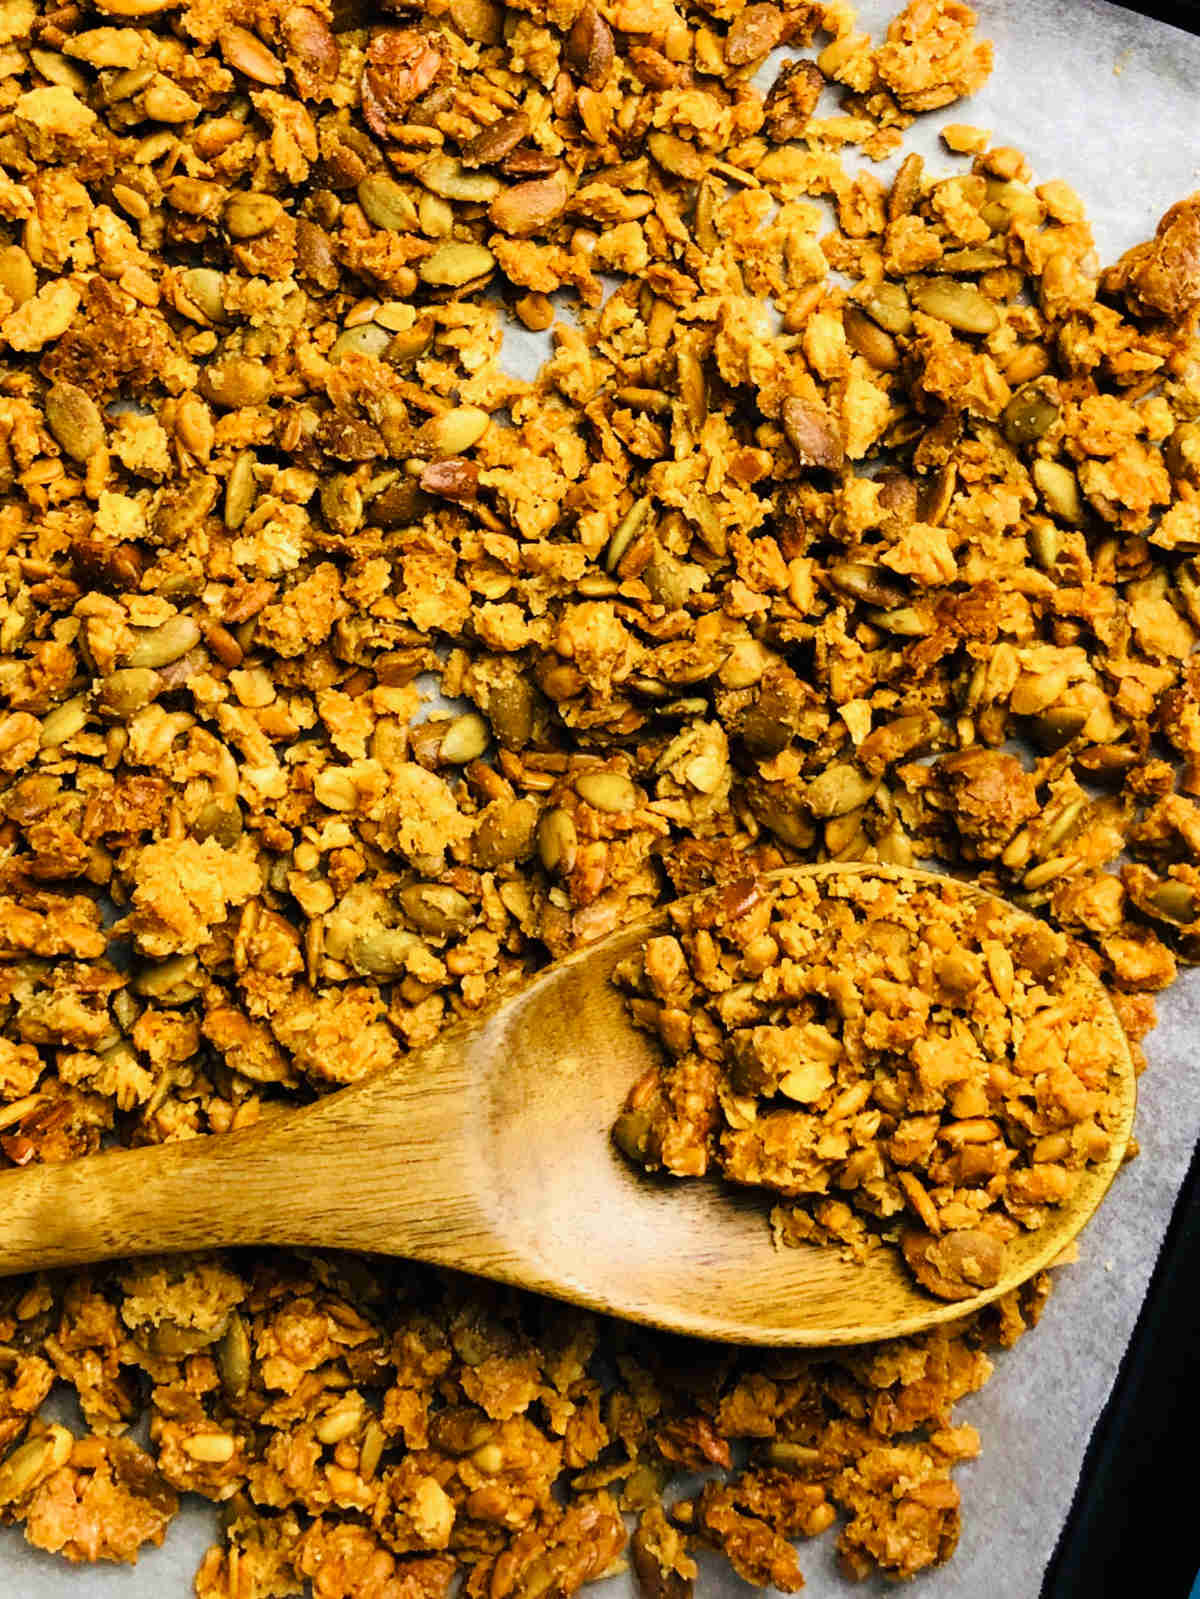 Sourdough granola on a baking tray.